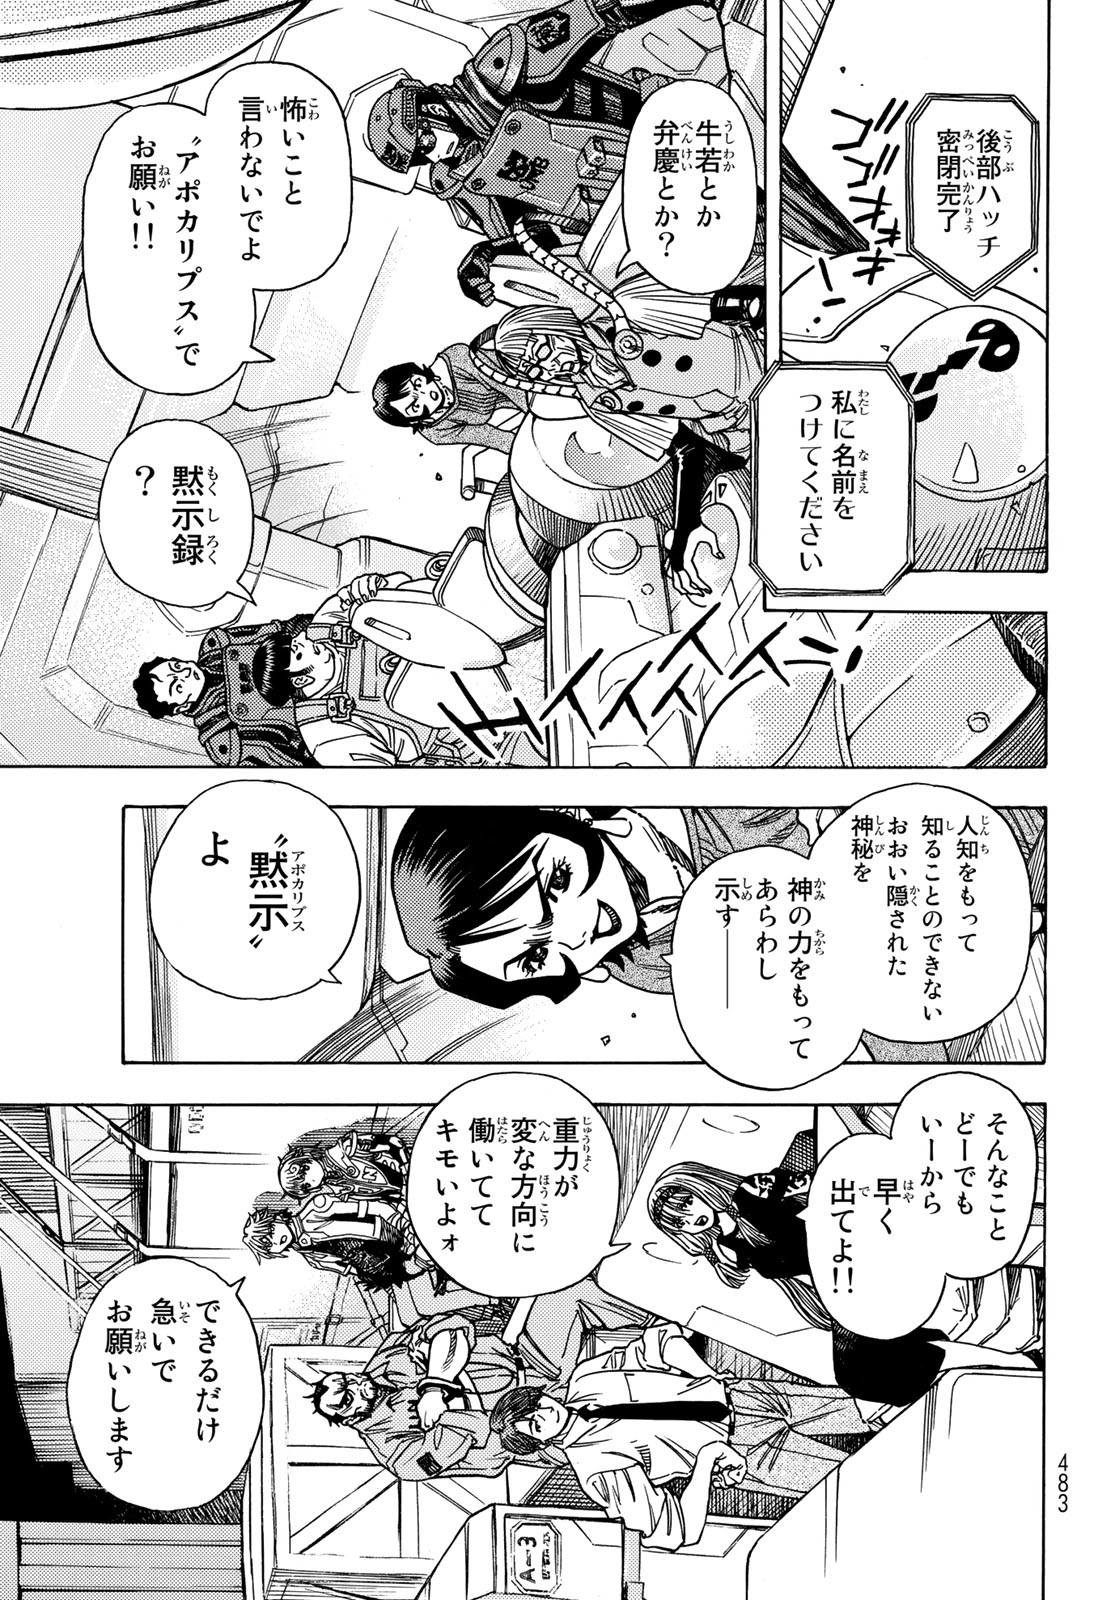 Mugou no Schnell Gear: Chikyuugai Kisouka AI - Chapter 37 - Page 9